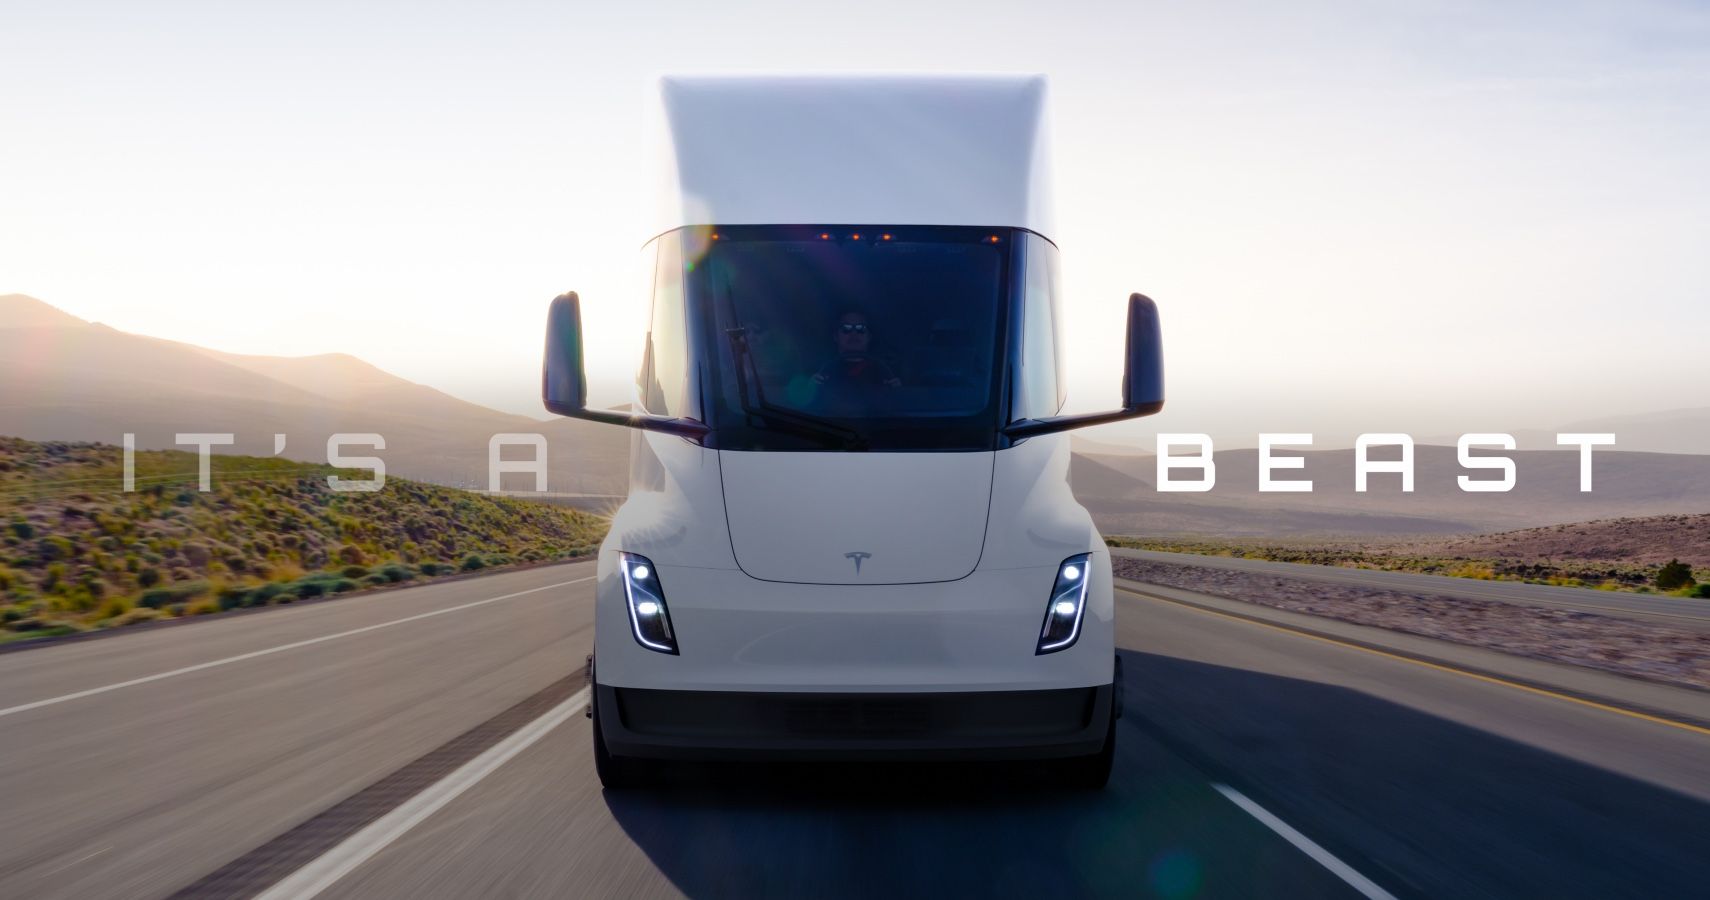 Tesla Semi Truck Its A Beast Tagline